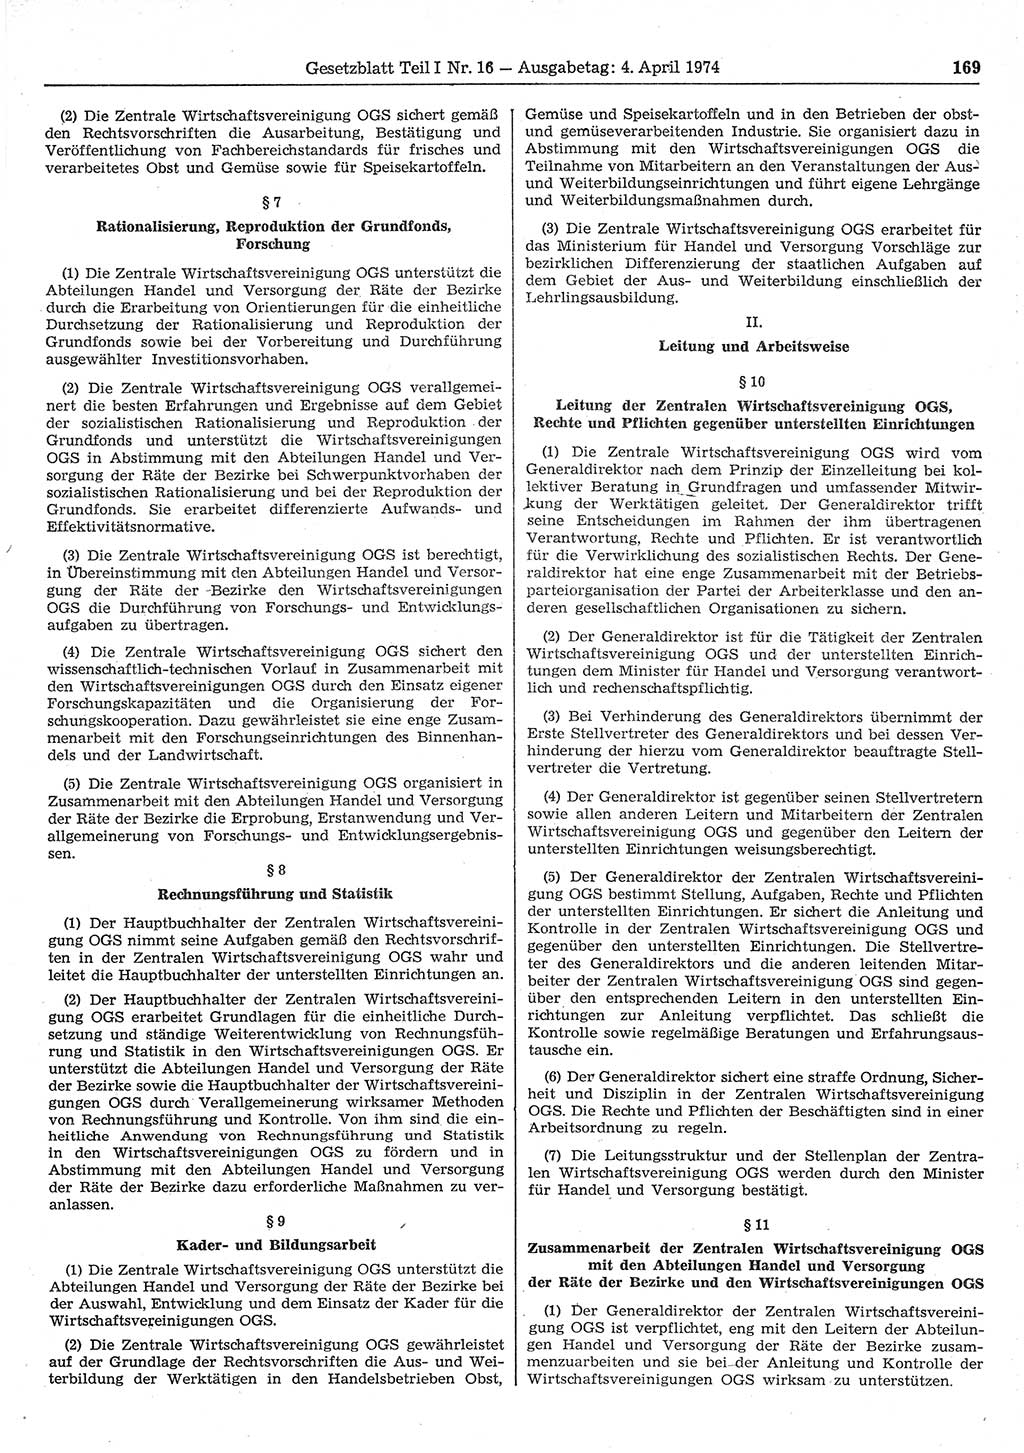 Gesetzblatt (GBl.) der Deutschen Demokratischen Republik (DDR) Teil Ⅰ 1974, Seite 169 (GBl. DDR Ⅰ 1974, S. 169)